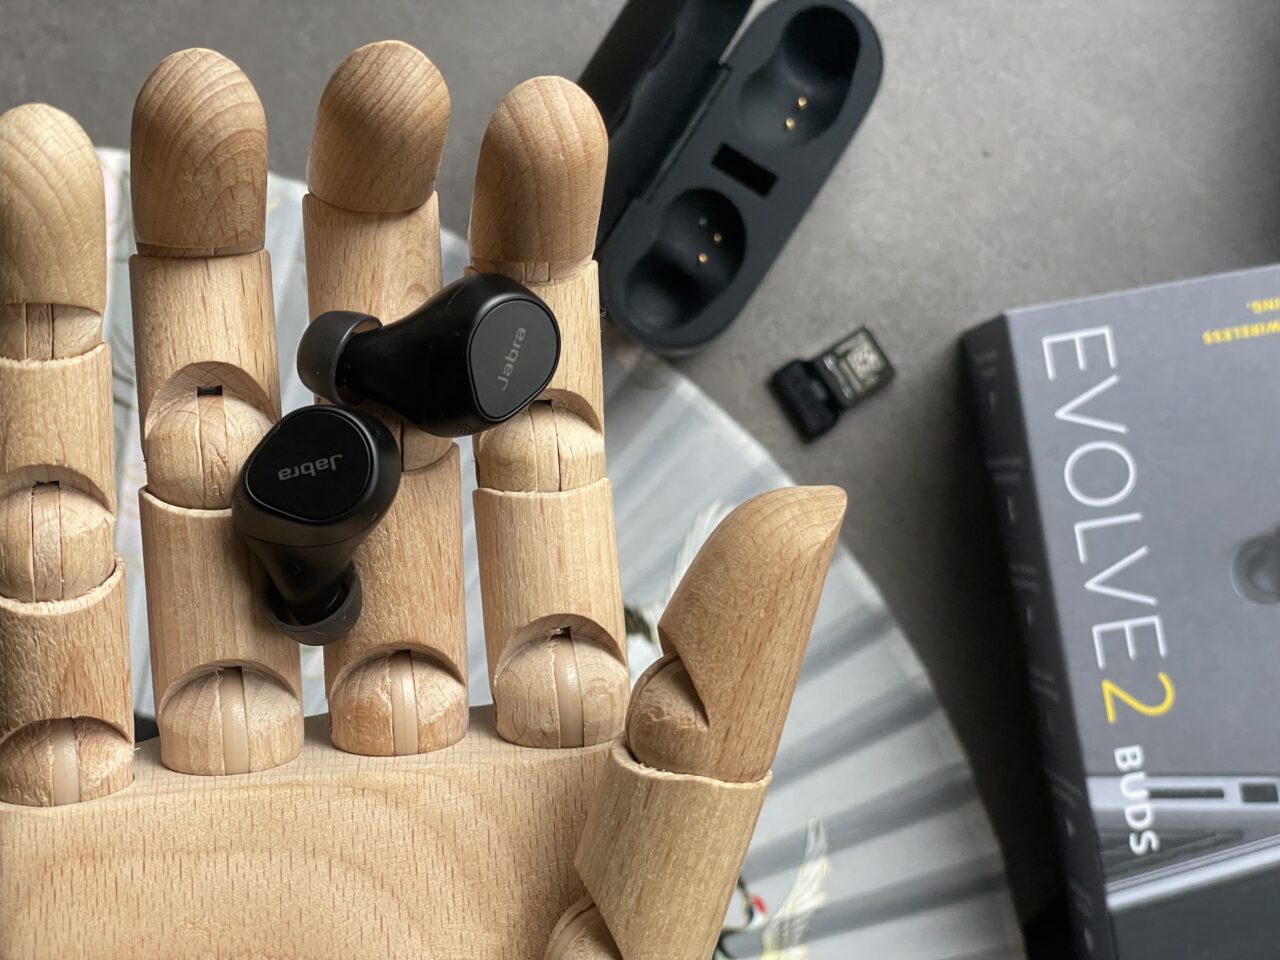 Drewniana ręka trzymająca czarne bezprzewodowe słuchawki douszne; w tle etui do ładowania słuchawek i pudełko z napisem "EVOLVE2 BUDS".